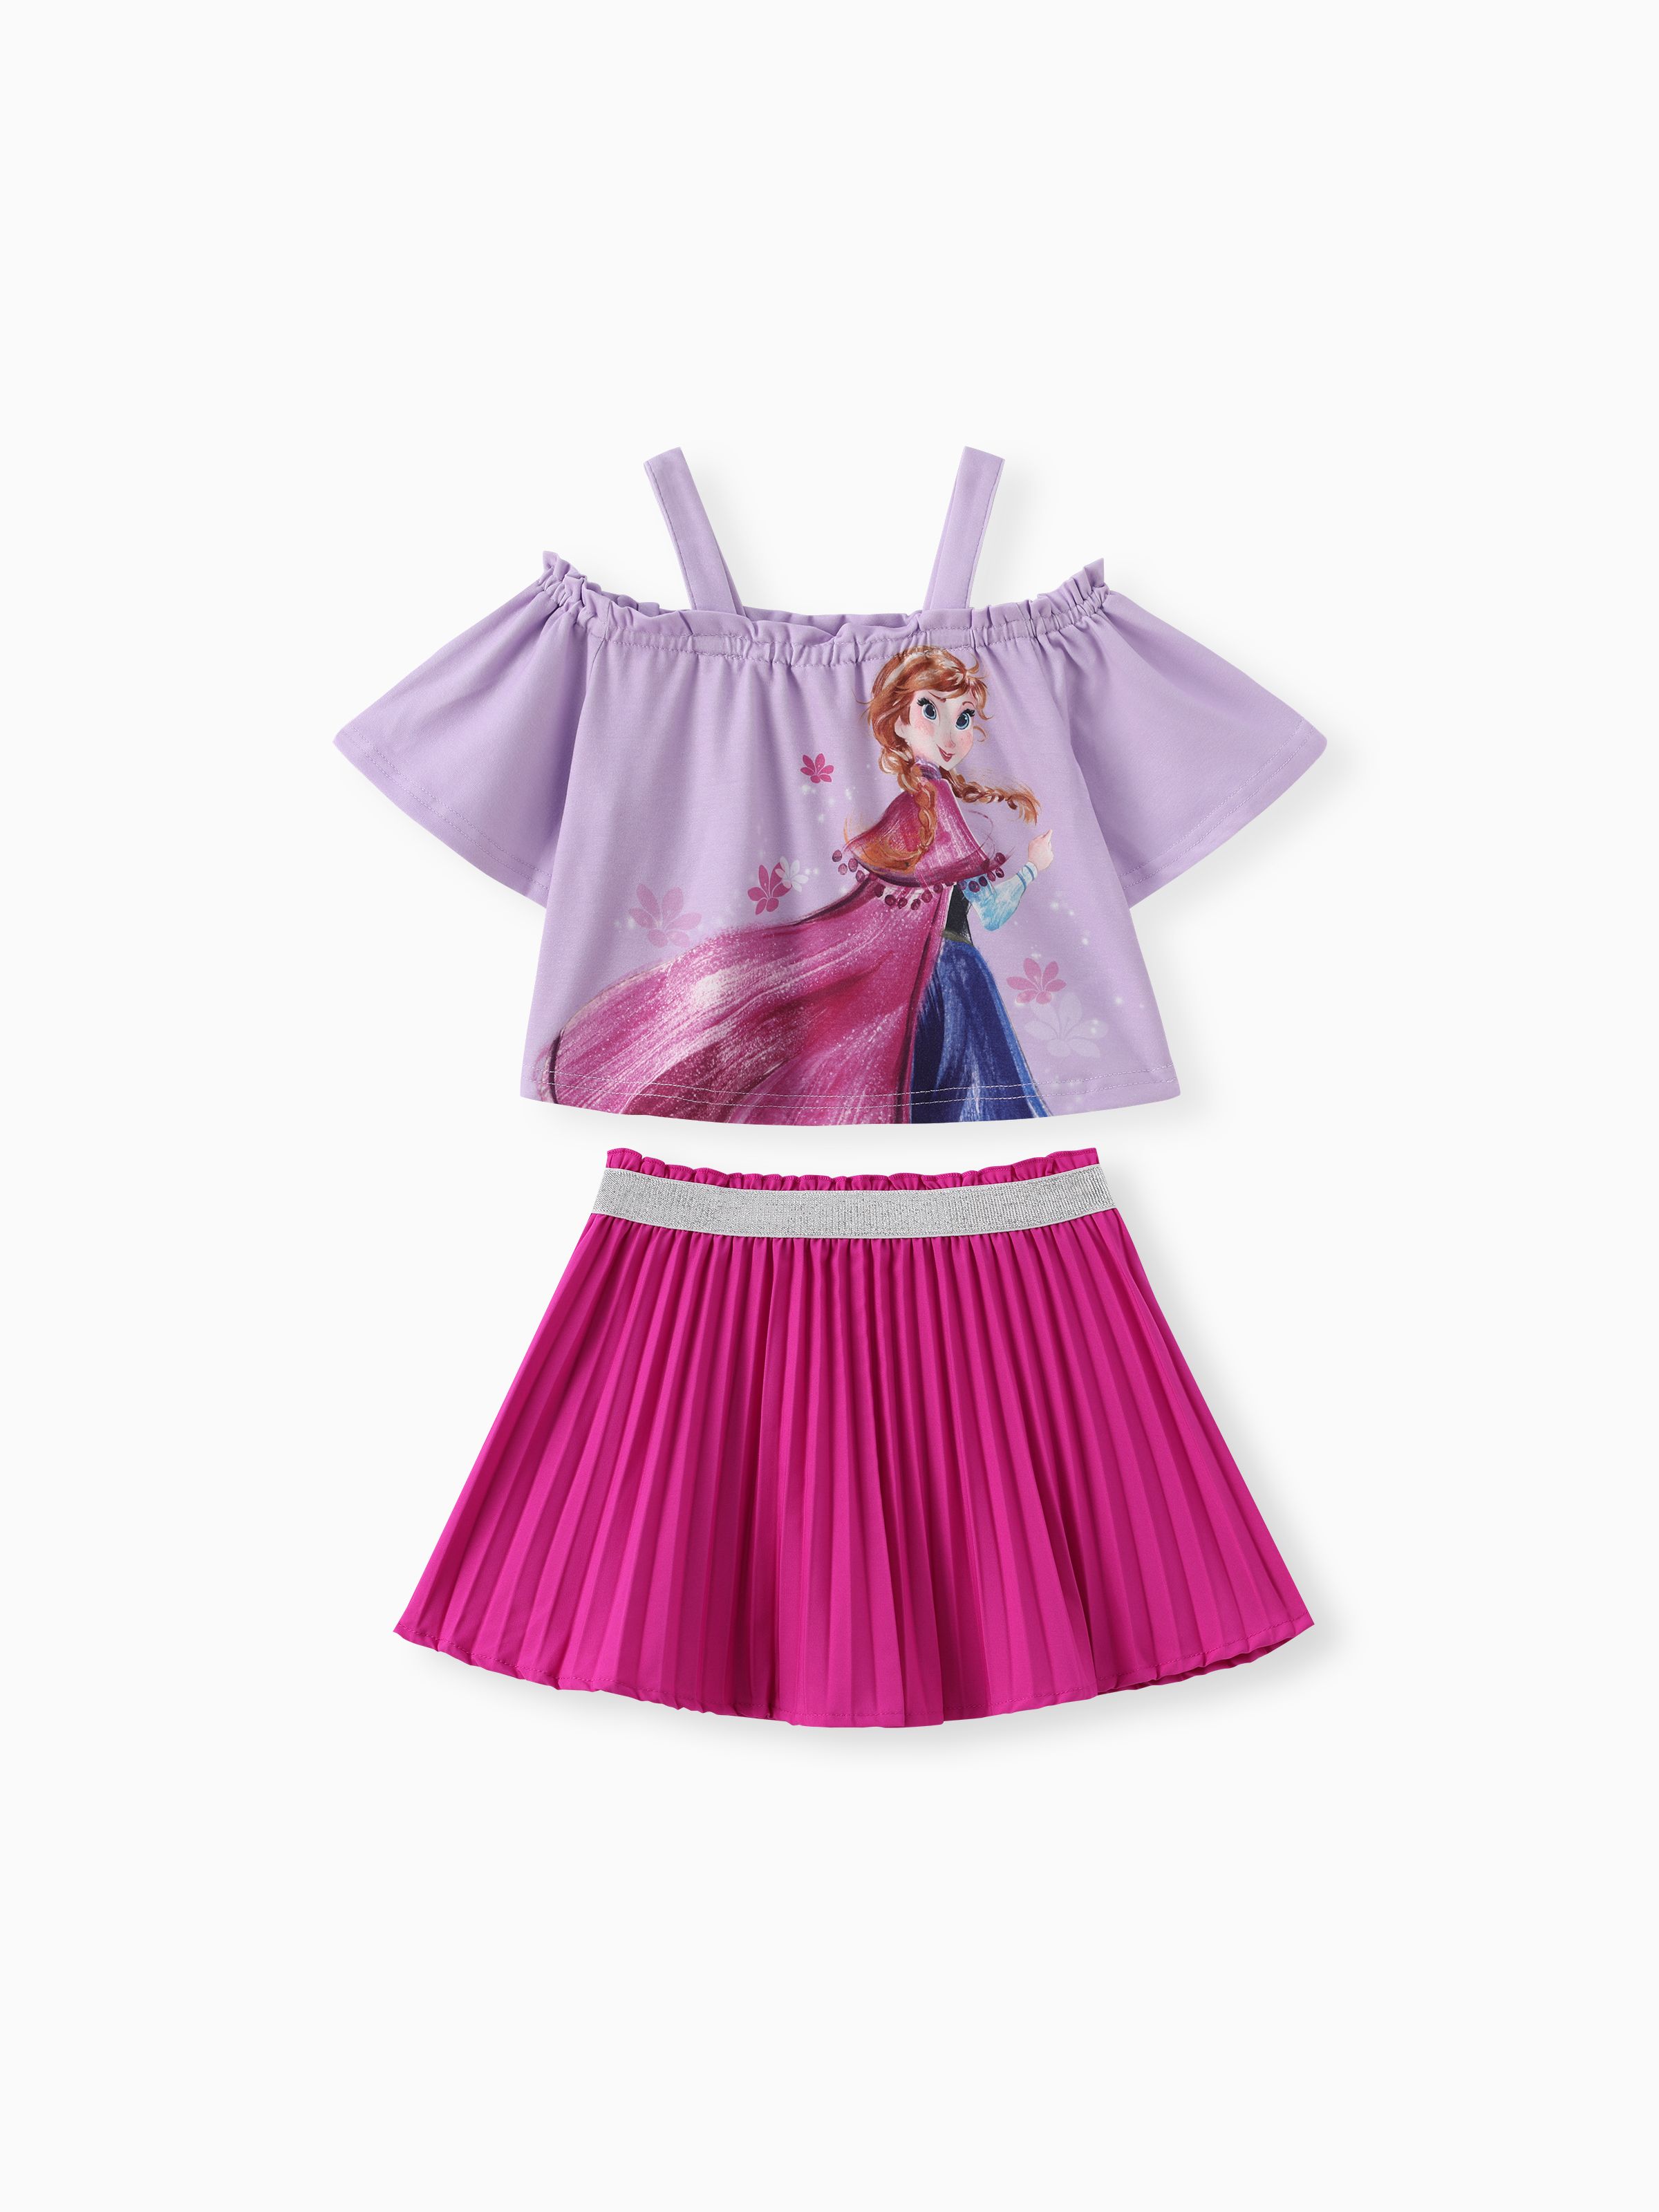 

Disney Princess Toddler Girls 2pcs Naia™ Elsa/Anna Magic Print Off-shoulder Top with Metallic Pleats Skirt Set